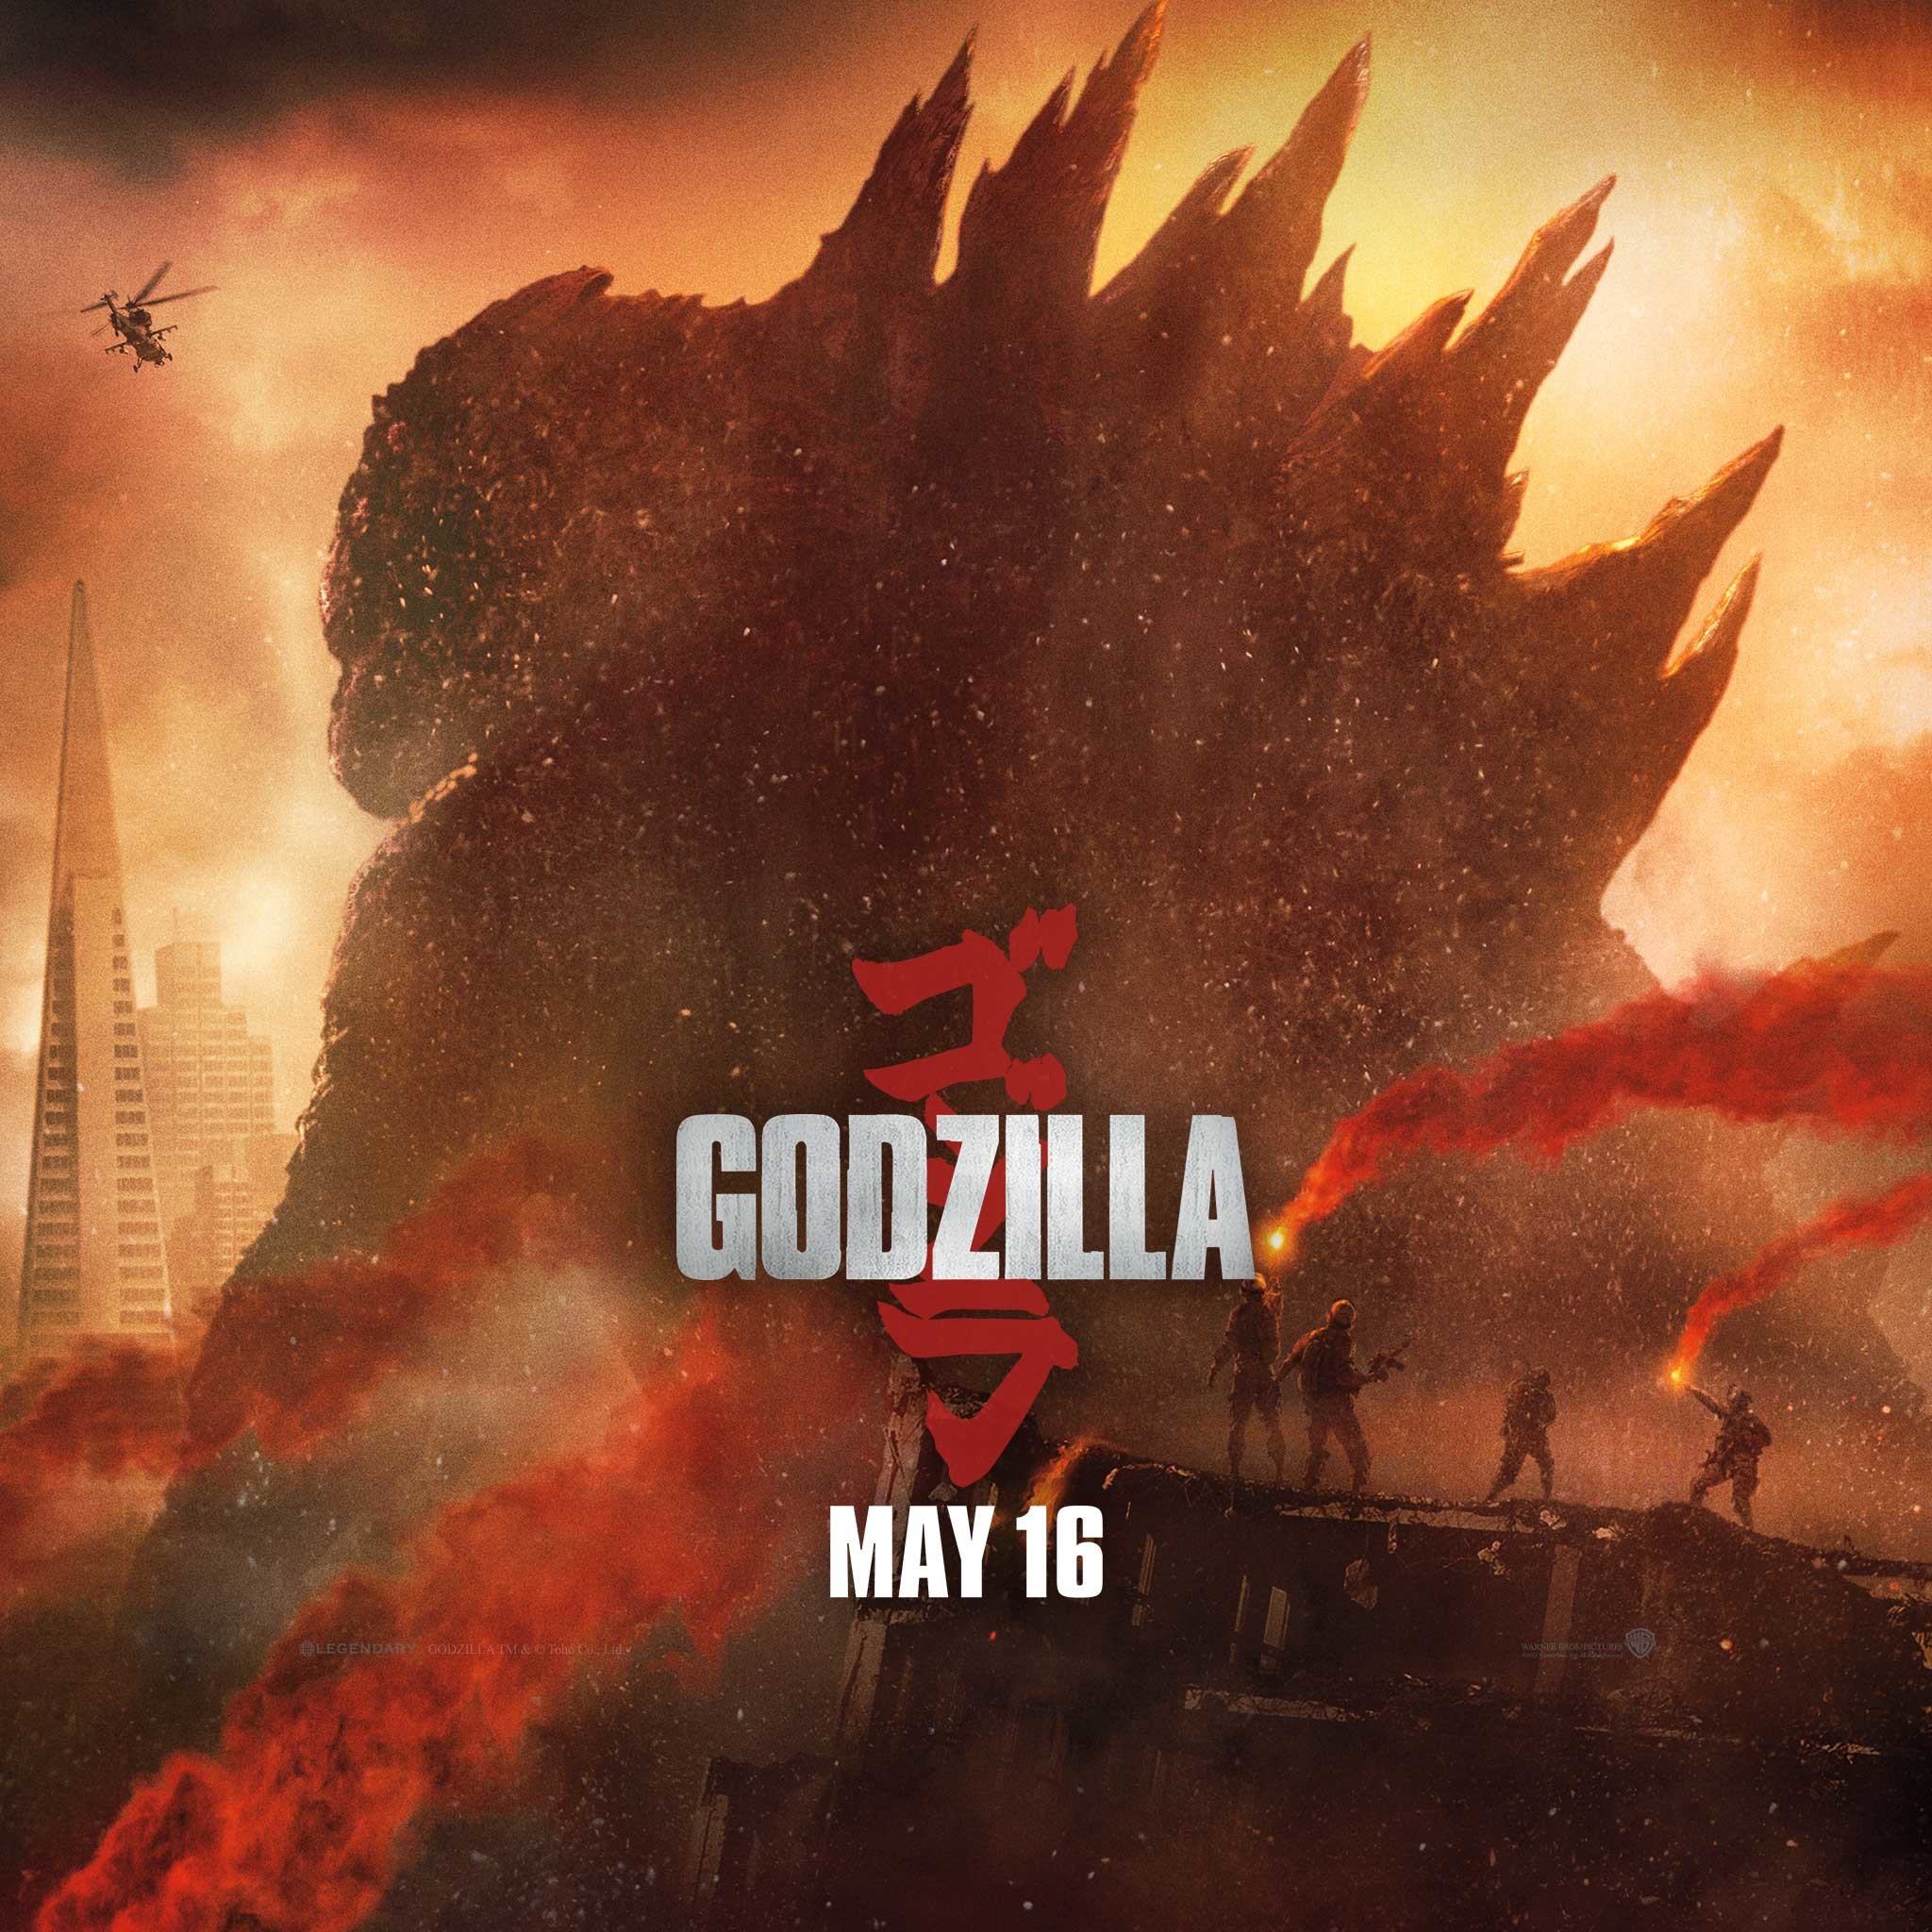 2048x2048 ... Godzilla-movie-2014-wallpaper-ipad ...